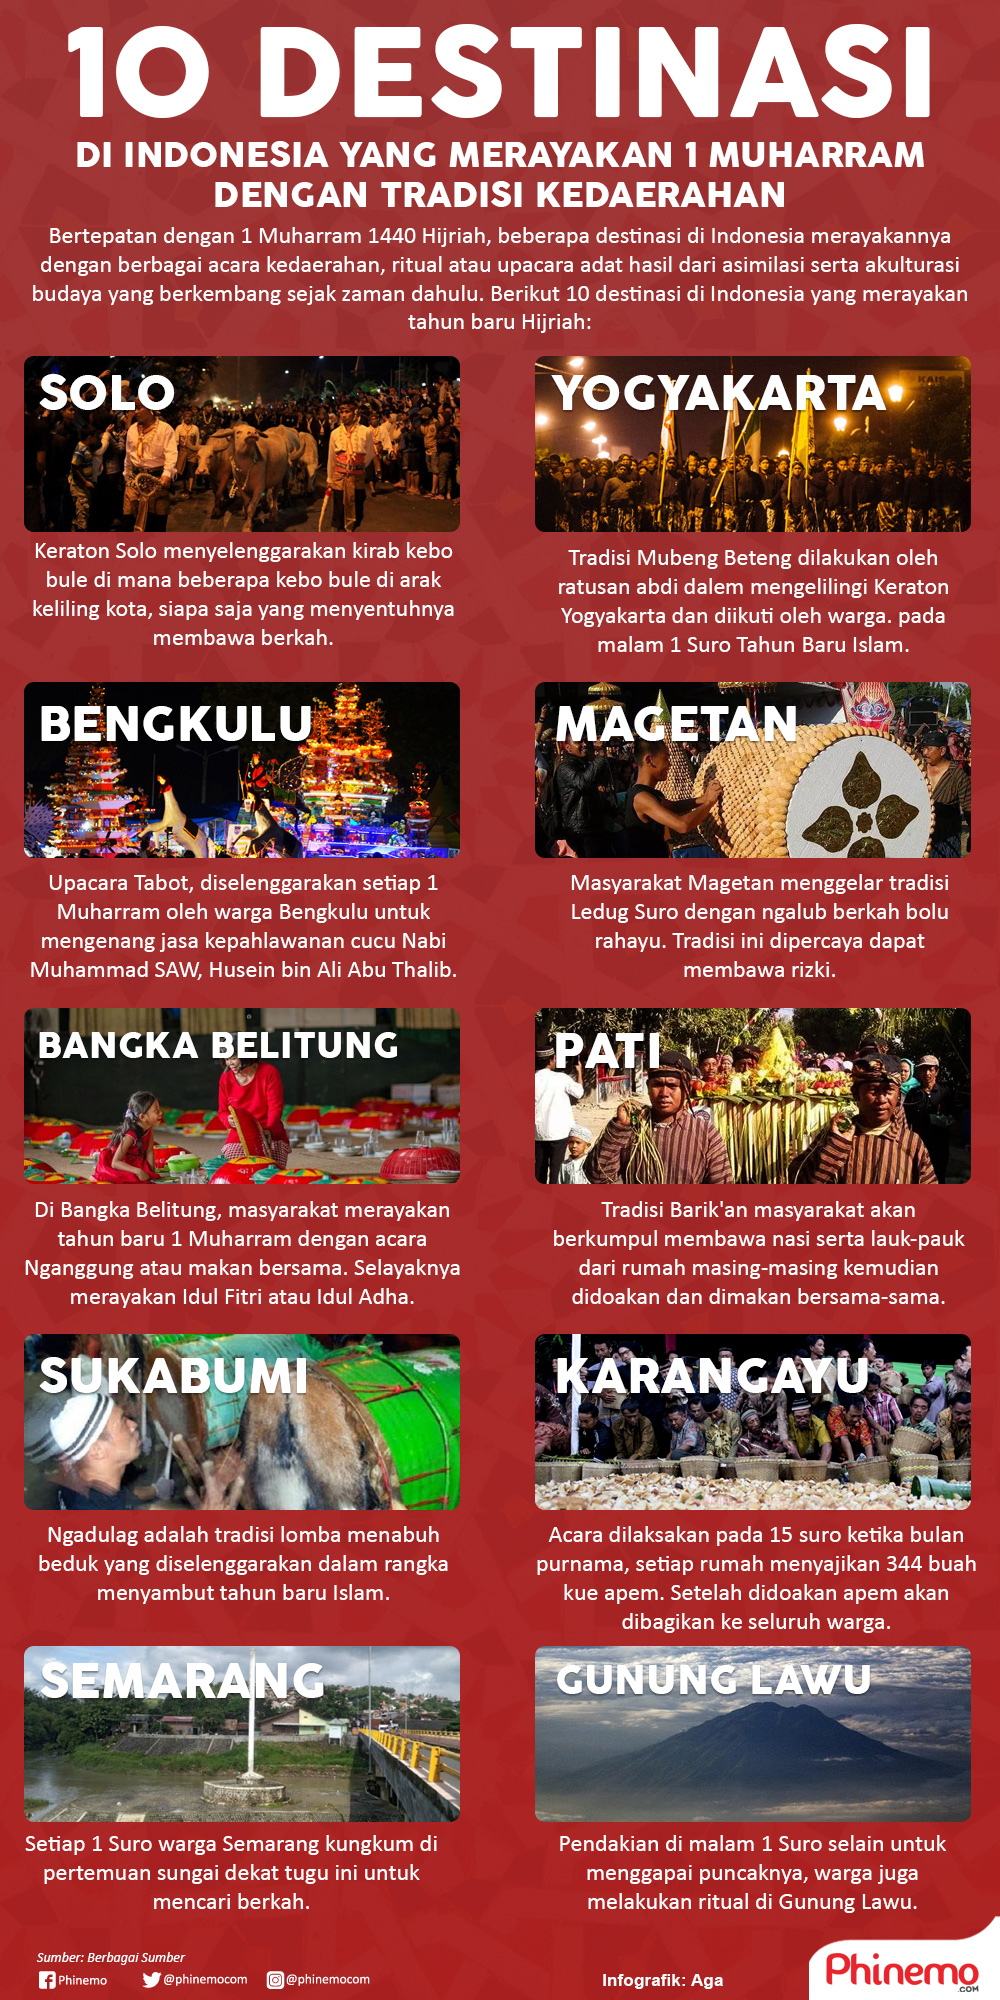 Infografik 10 Destinasi di Indonesia yang Merayakan 1 Muharram dengan Meriah